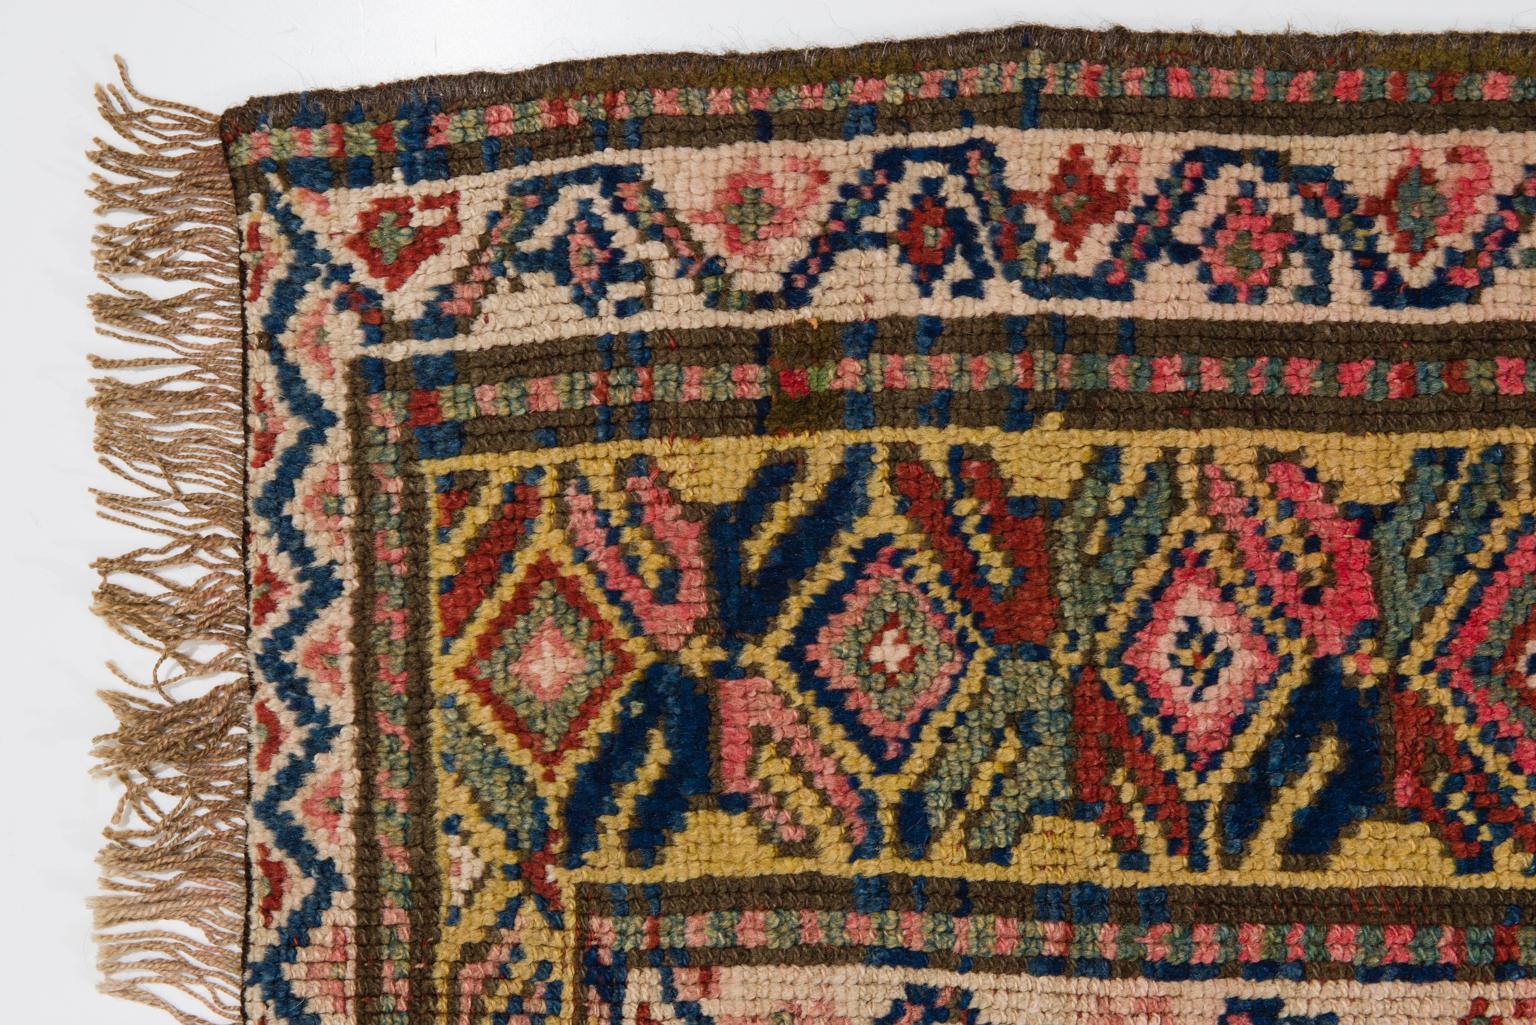 Central Asian Old Kurdestan Carpet or Rug For Sale